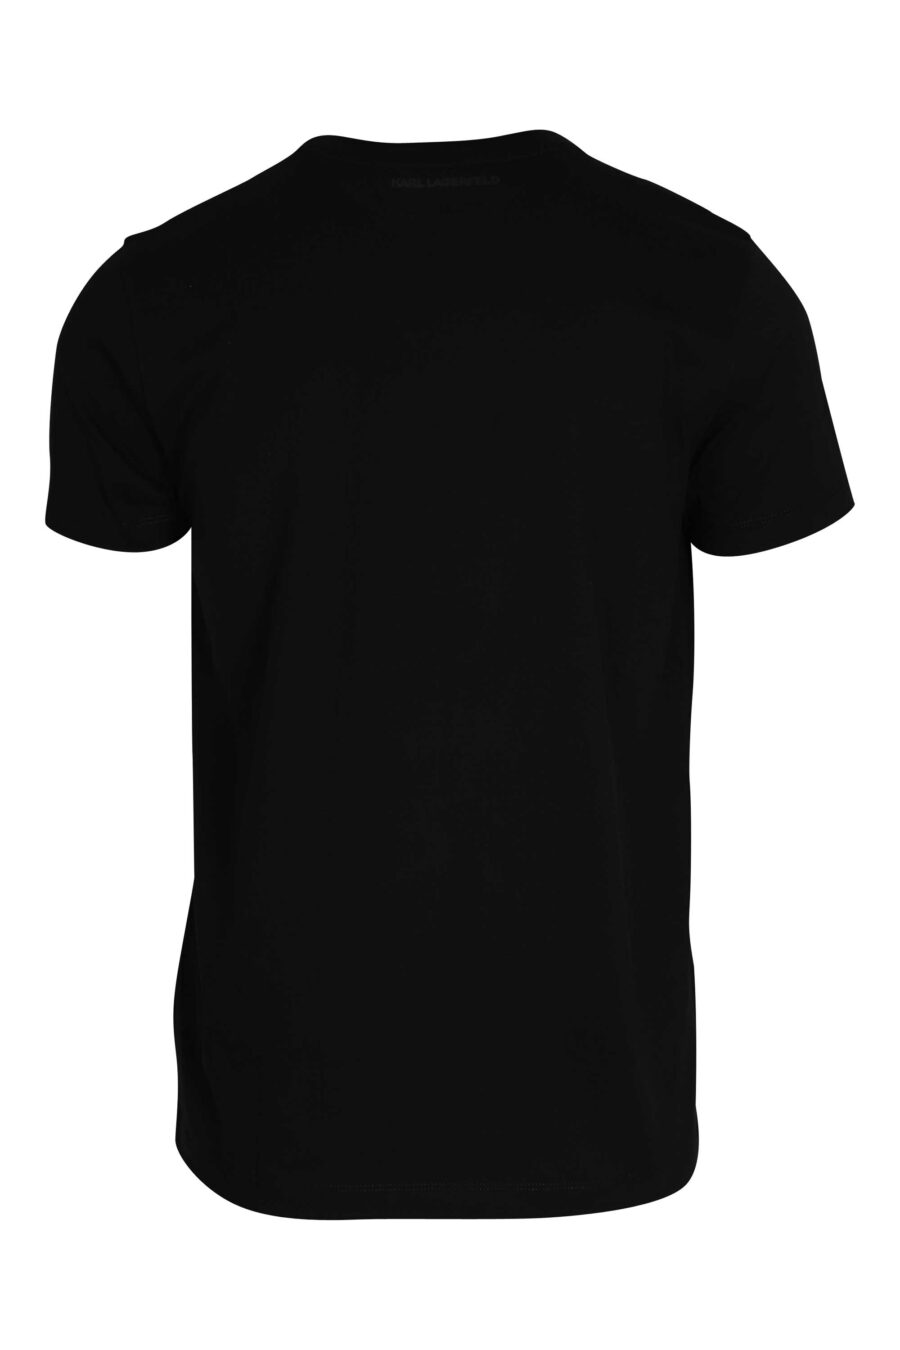 Black T-shirt with shiny black maxilogue - 014543001 2